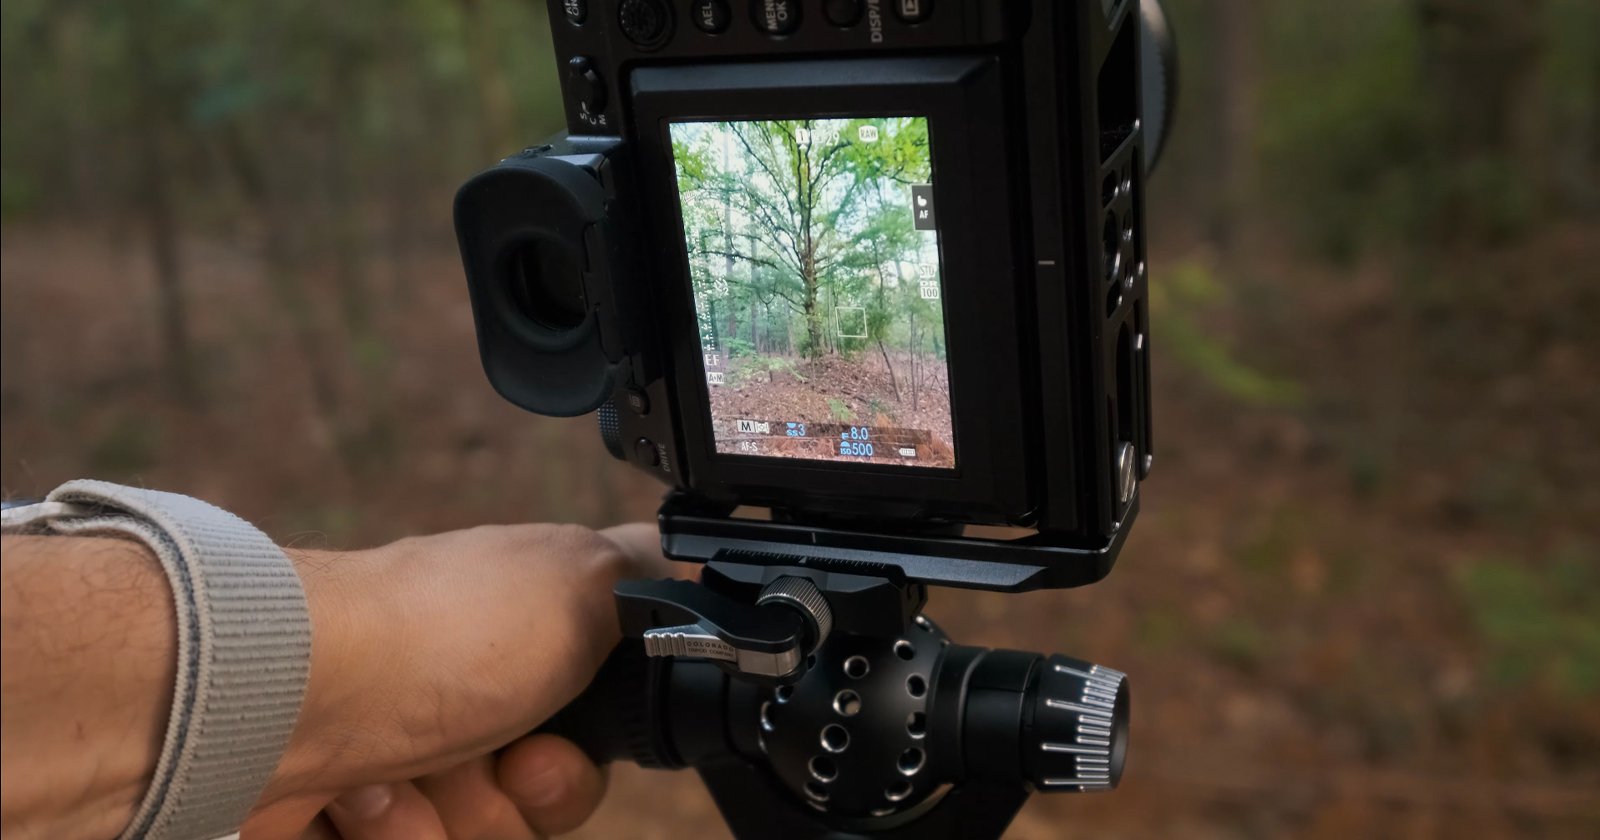 8 Handy Digital camera Hacks for Landscape Pictures